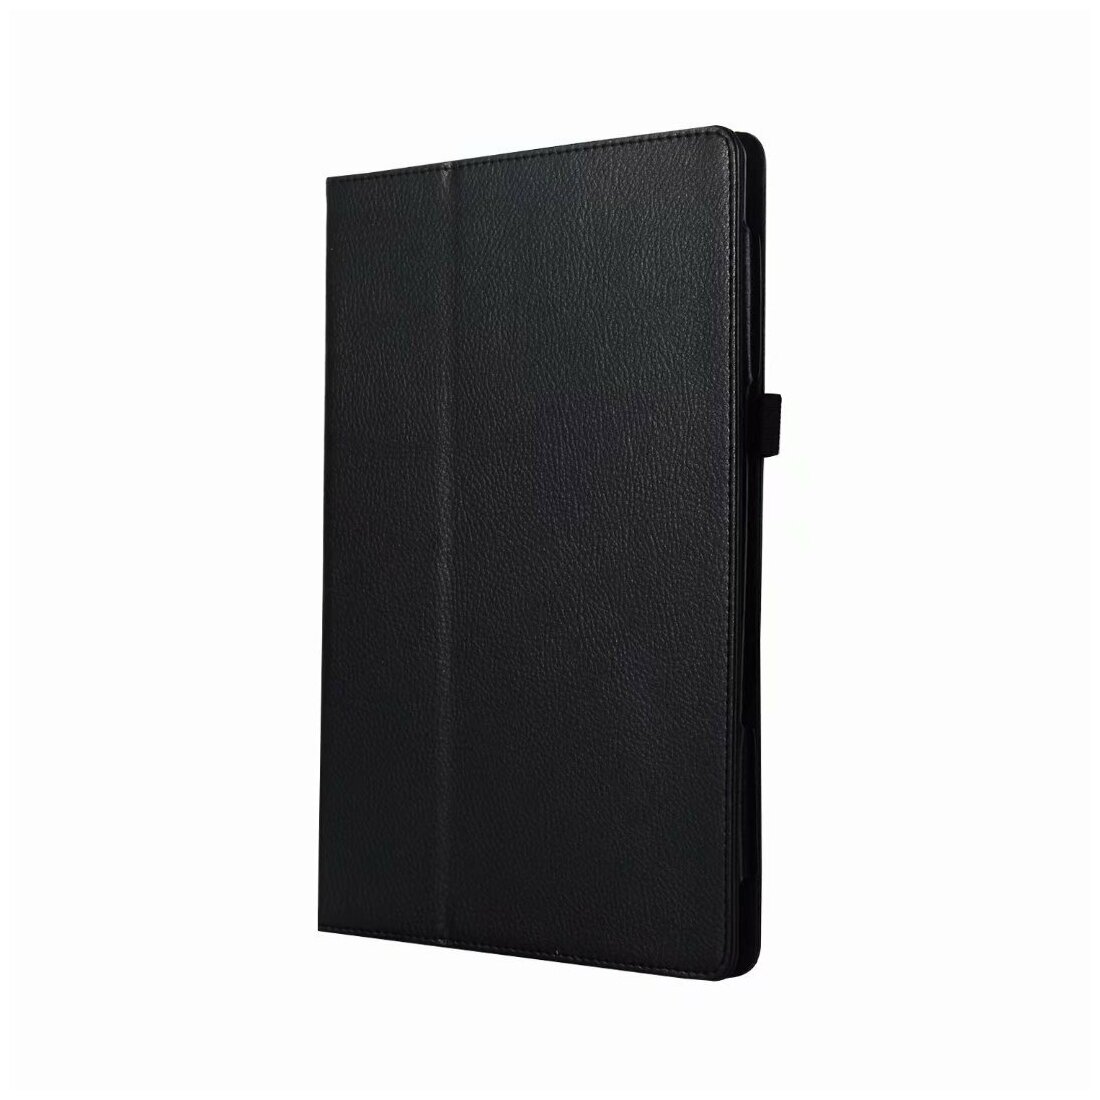 Чехол-обложка MyPads для Samsung Galaxy Tab S6 Lite 10.4 SM-P610 / P615 с подставкой черный кожаный